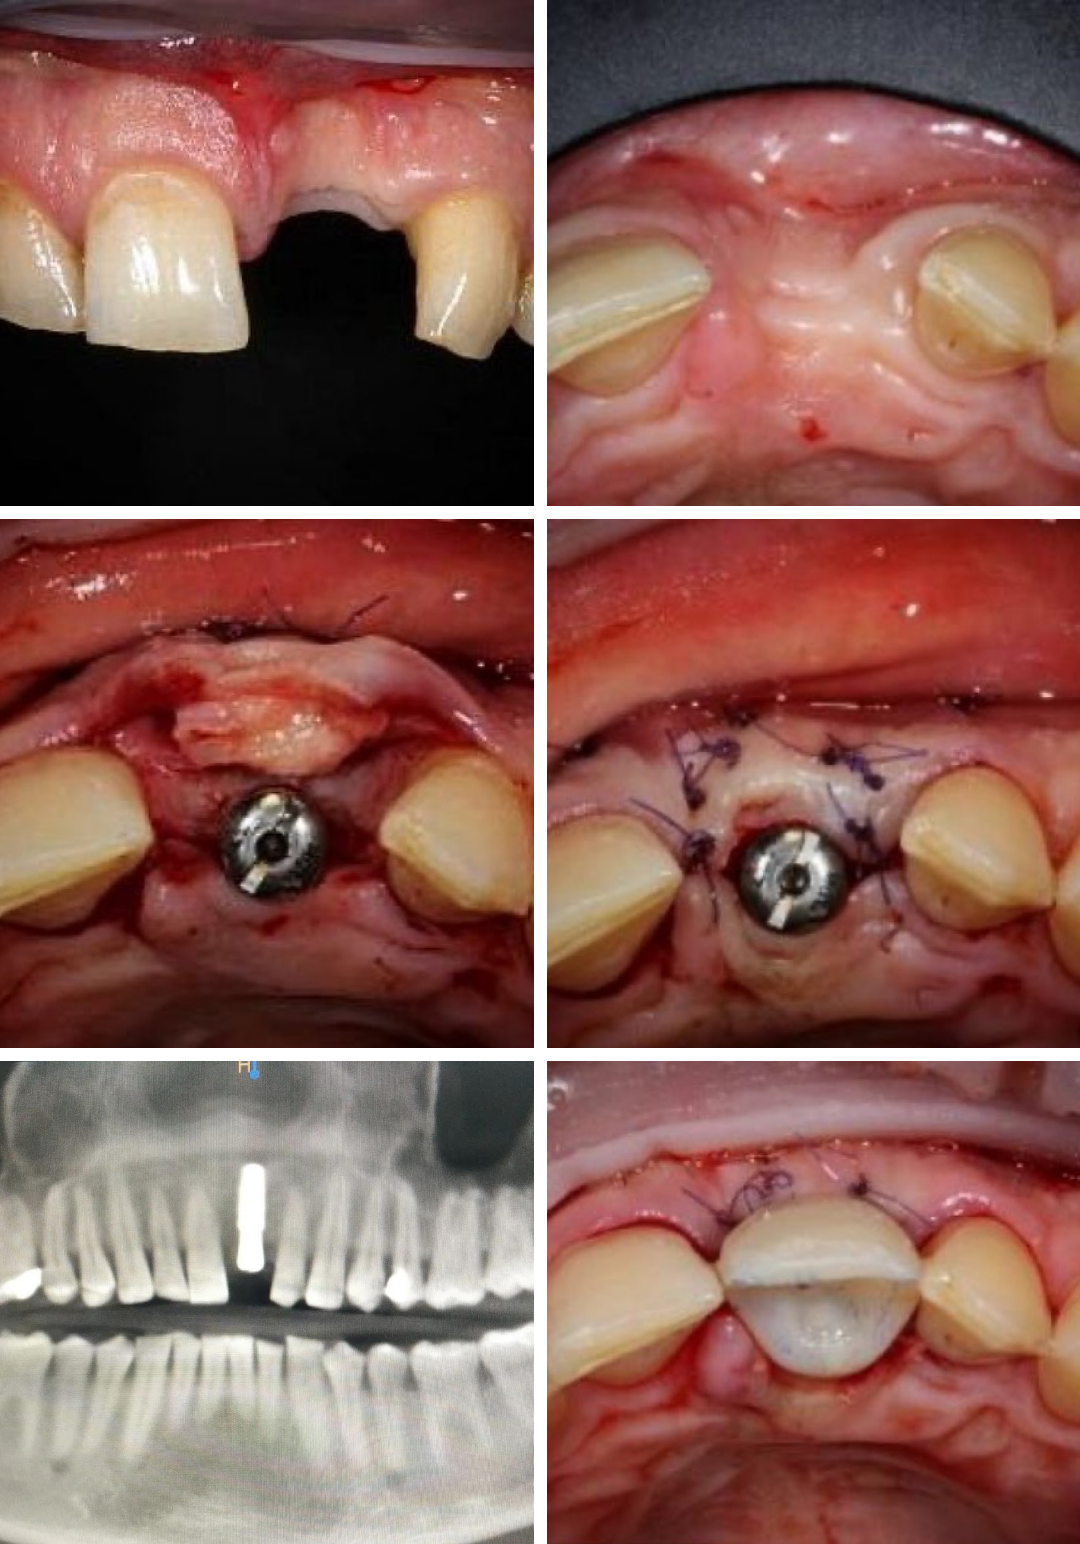 Проведена дентальная имплантация AnyRidge зуба 2.1 с пластикой десны (десневой трансплантат  получен с твердого неба верхней челюсти), а также установлена временная коронка. Кейс @zuby_pro32